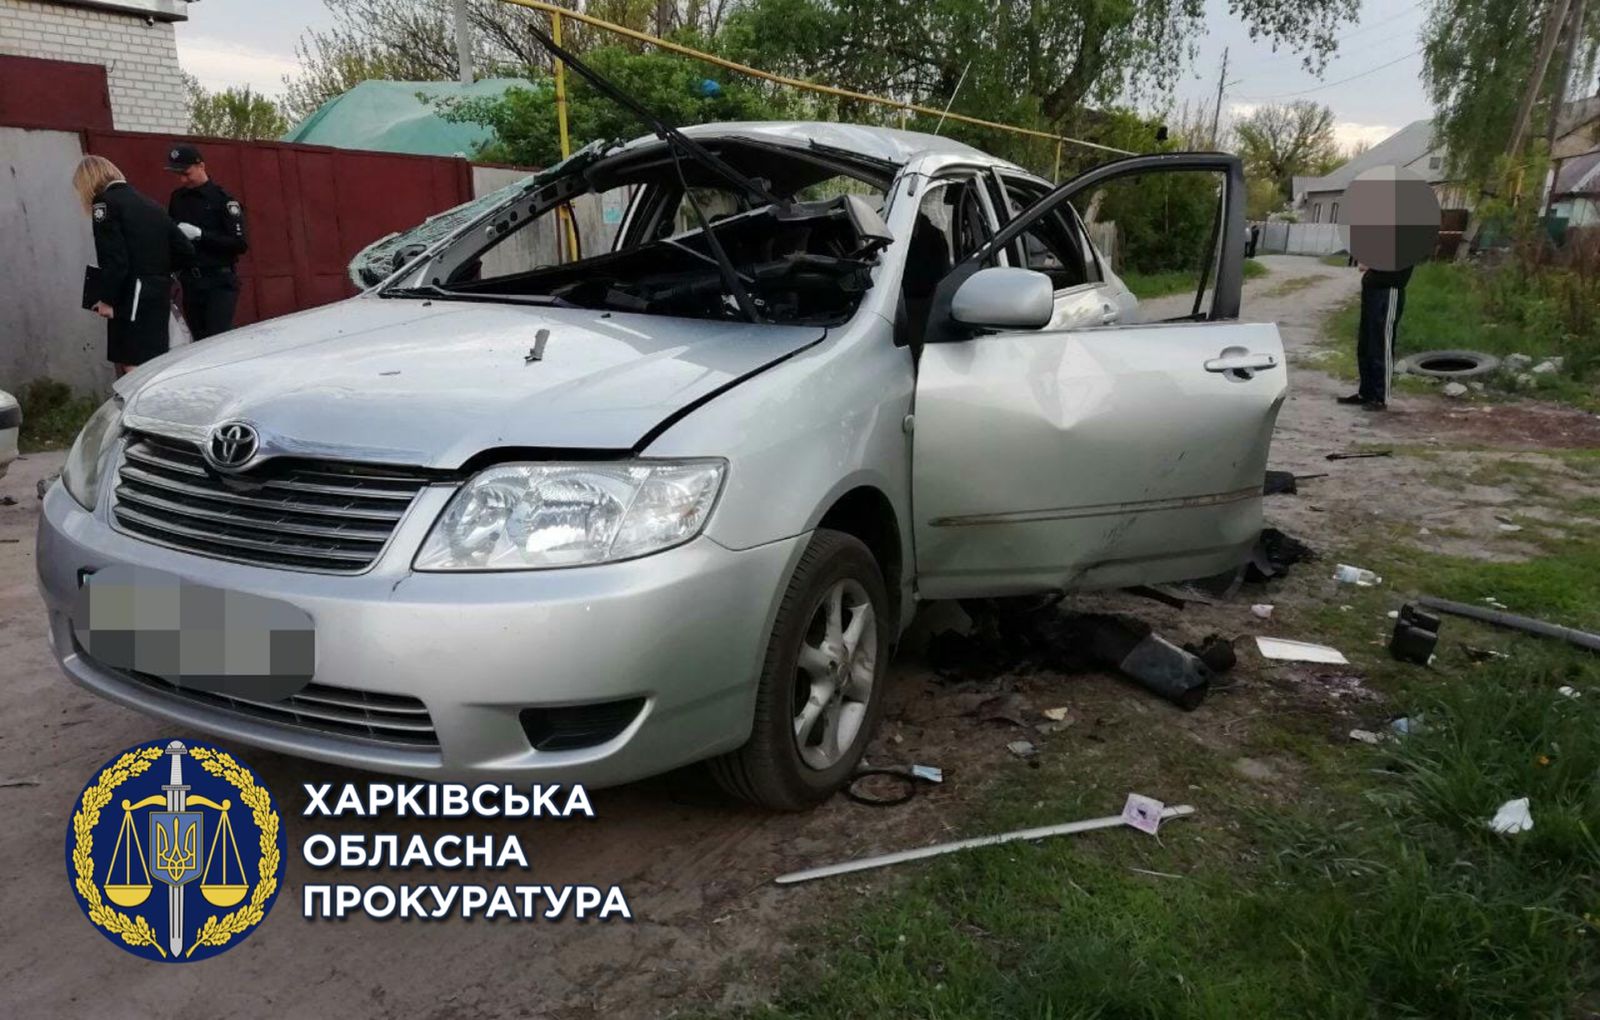 Криминал Харьков: Осужден мужчина, взорвавший такси вместе с водителем